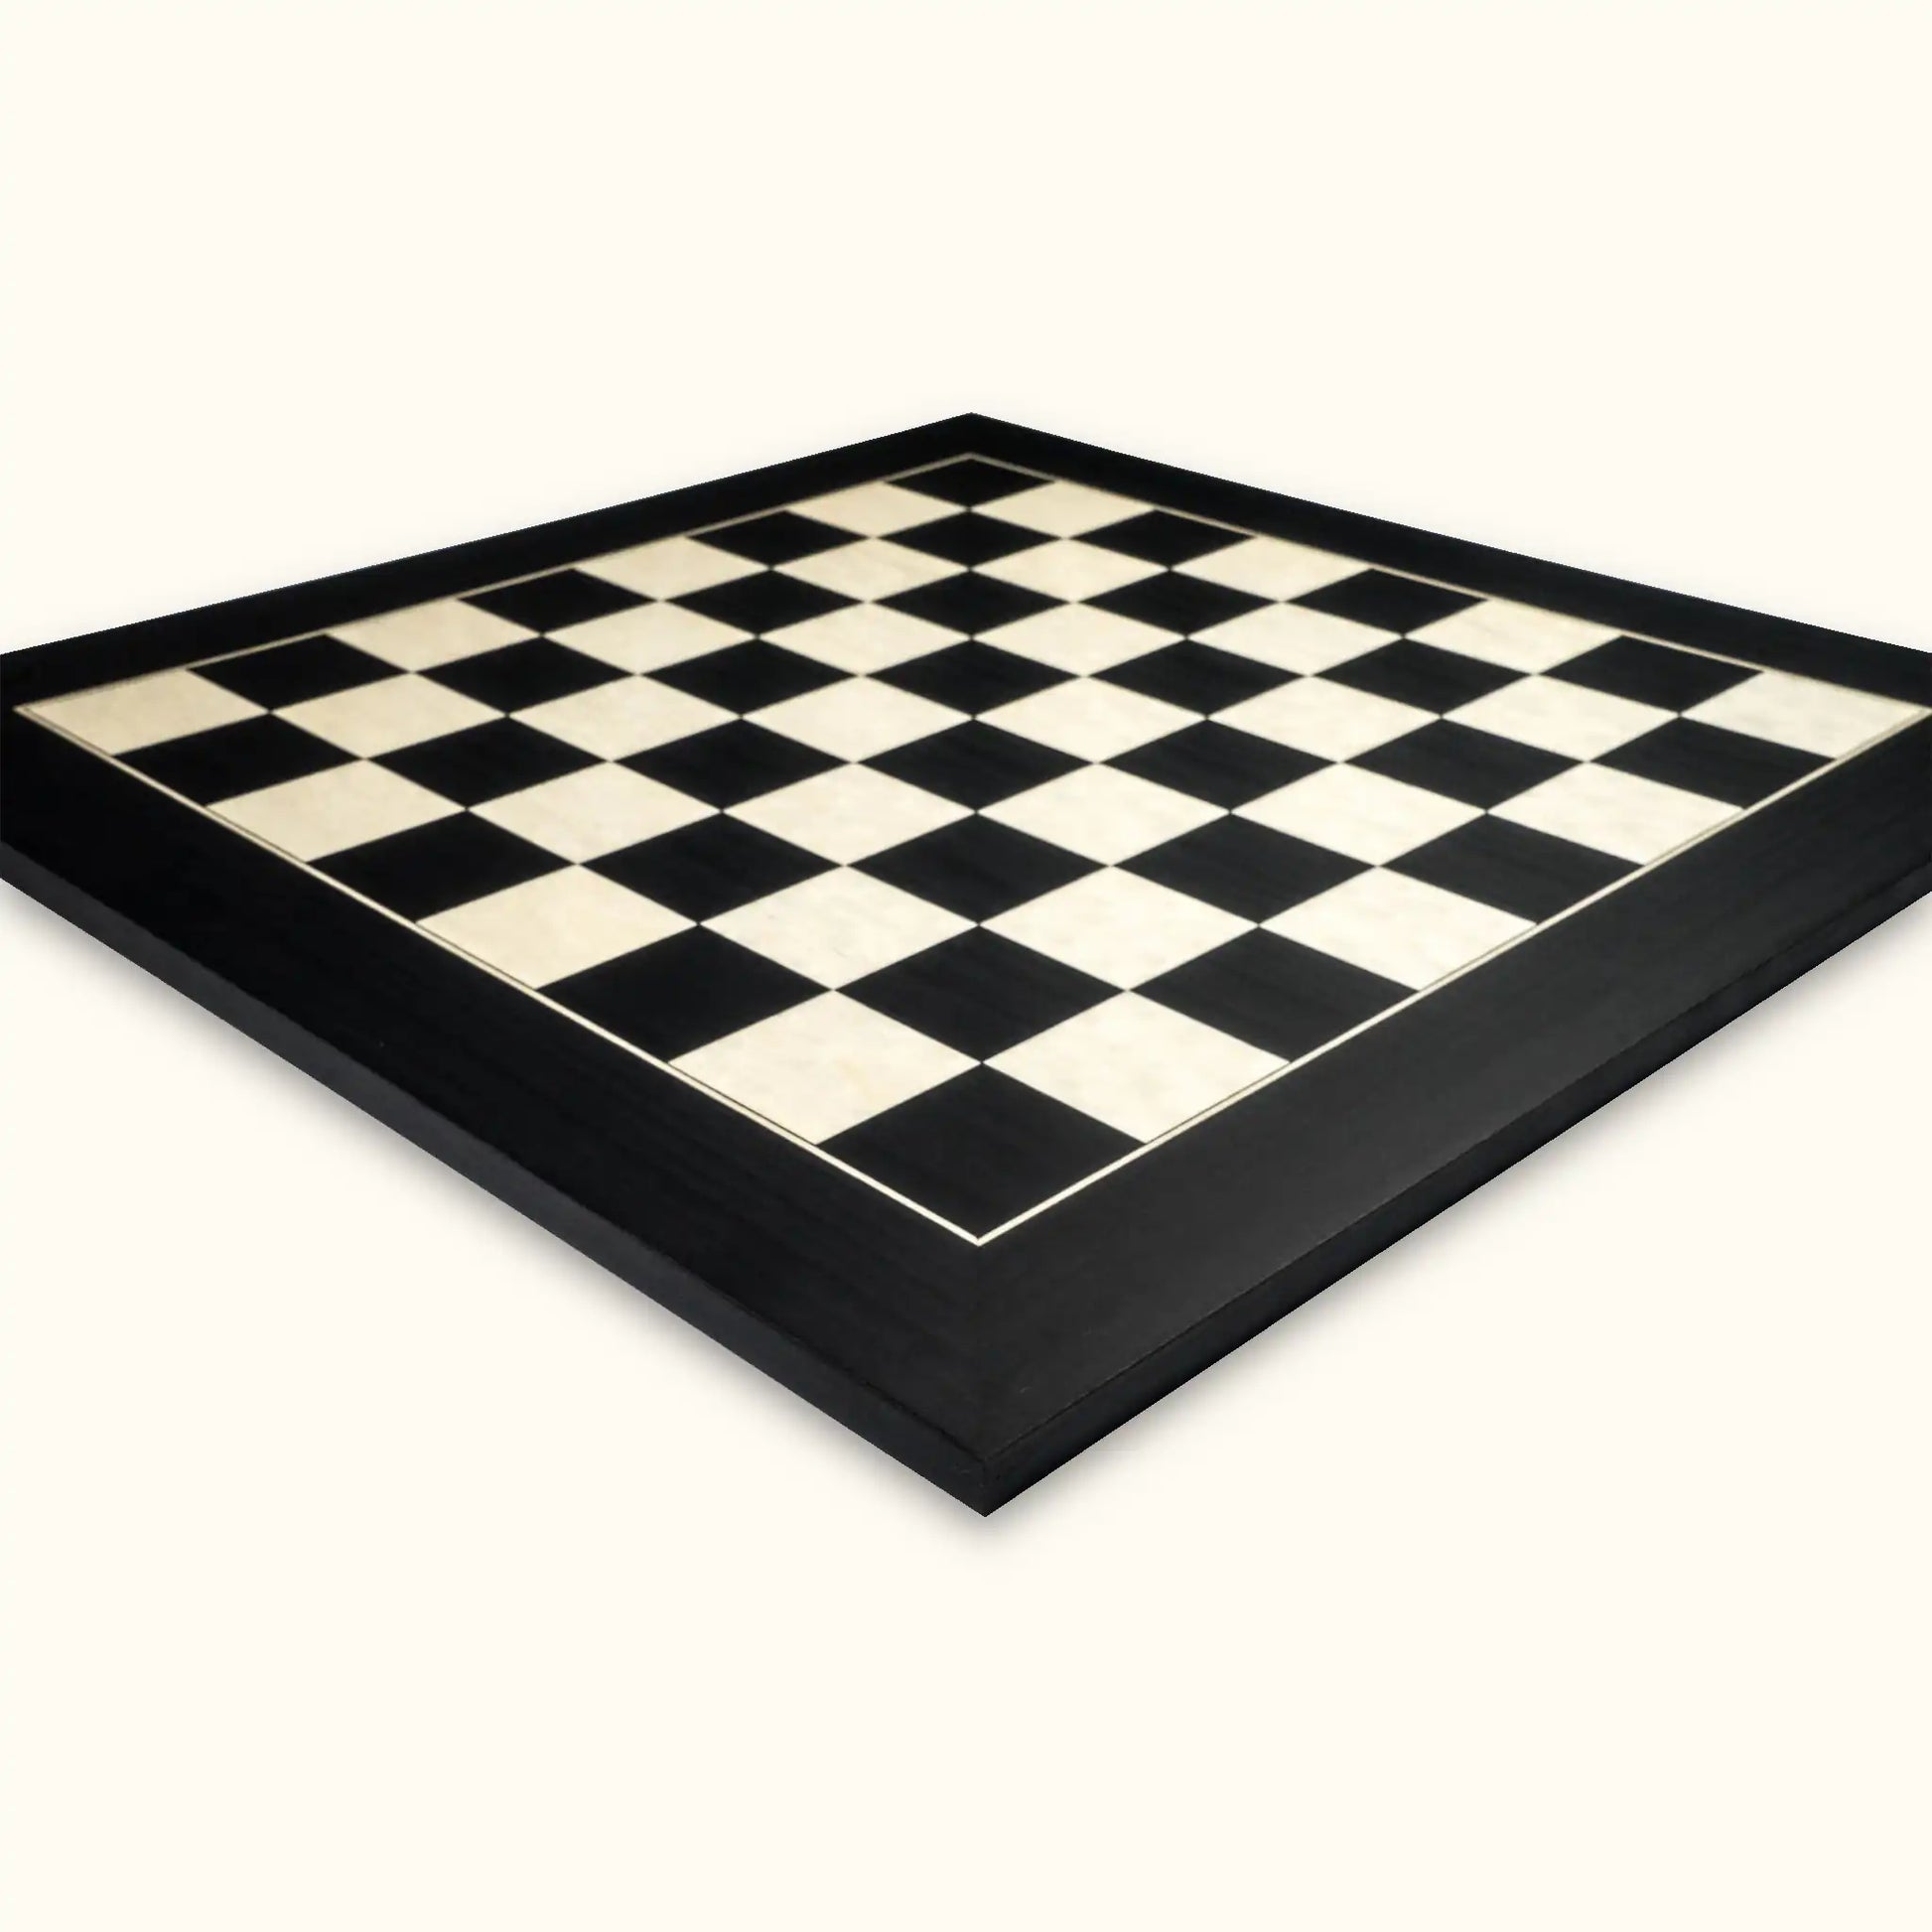 Chessboard black deluxe 55 mm diagonal view